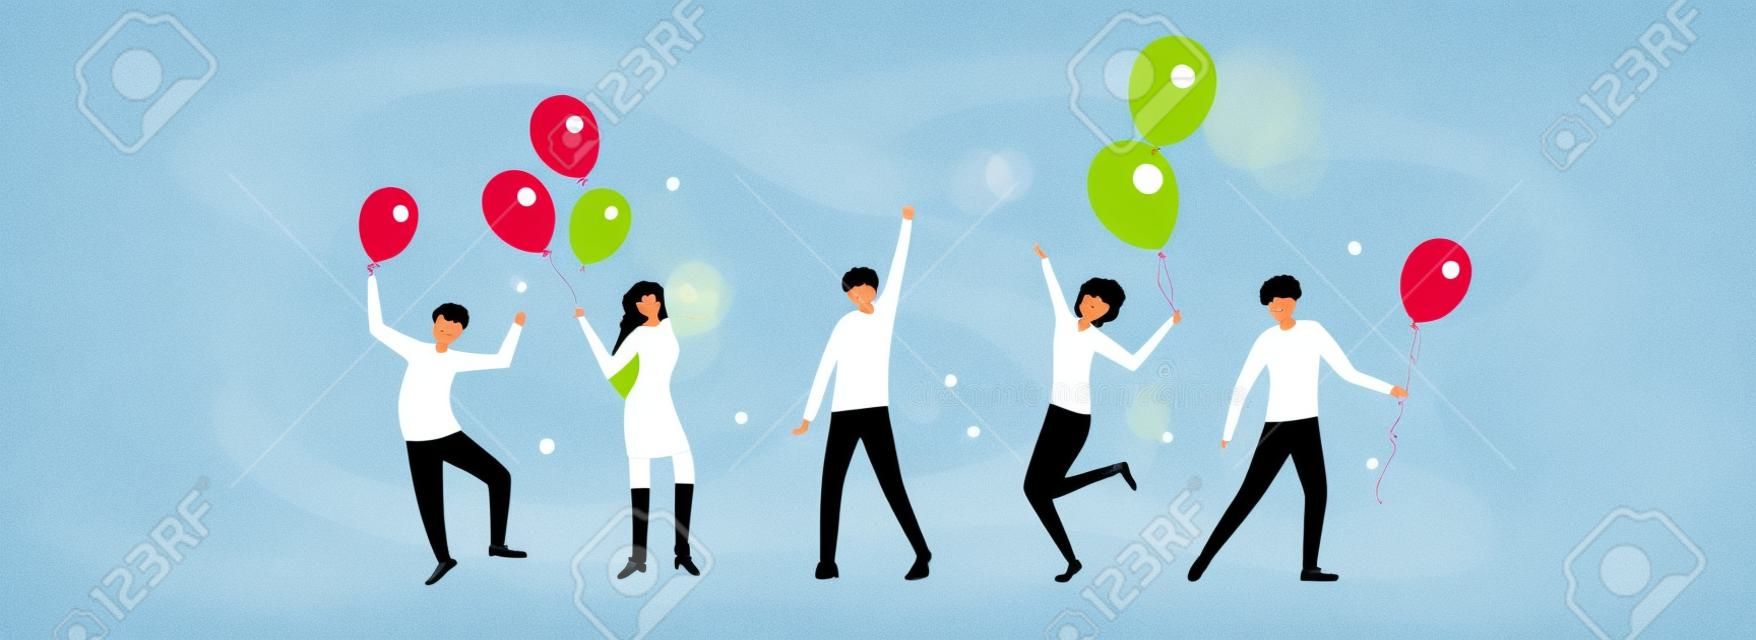 Feliz fiesta de cumpleaños y gente bailando con globos de vacaciones. grupo de hombres y mujeres jóvenes divirtiéndose y celebrando cumpleaños. la ilustración es para el diseño de vacaciones, tarjetas, invitación, pancartas, afiches